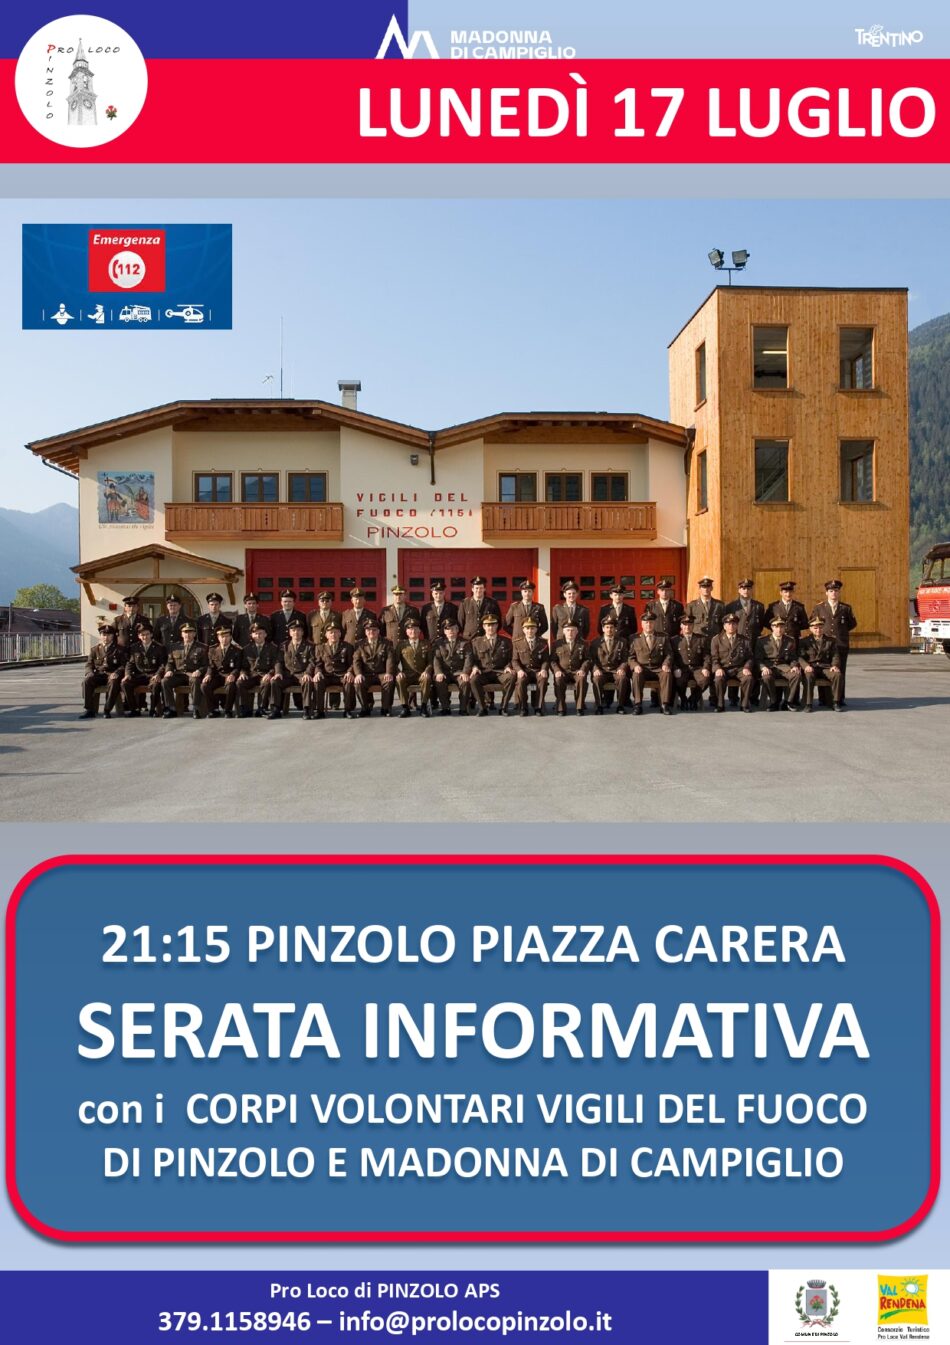 L’Estate è Pinzolo: Lunedì 17 luglio Serata informativa in piazza Carera con i Corpi volontari VIGILI DEL FUOCO di Pinzolo e Madonna di Campiglio